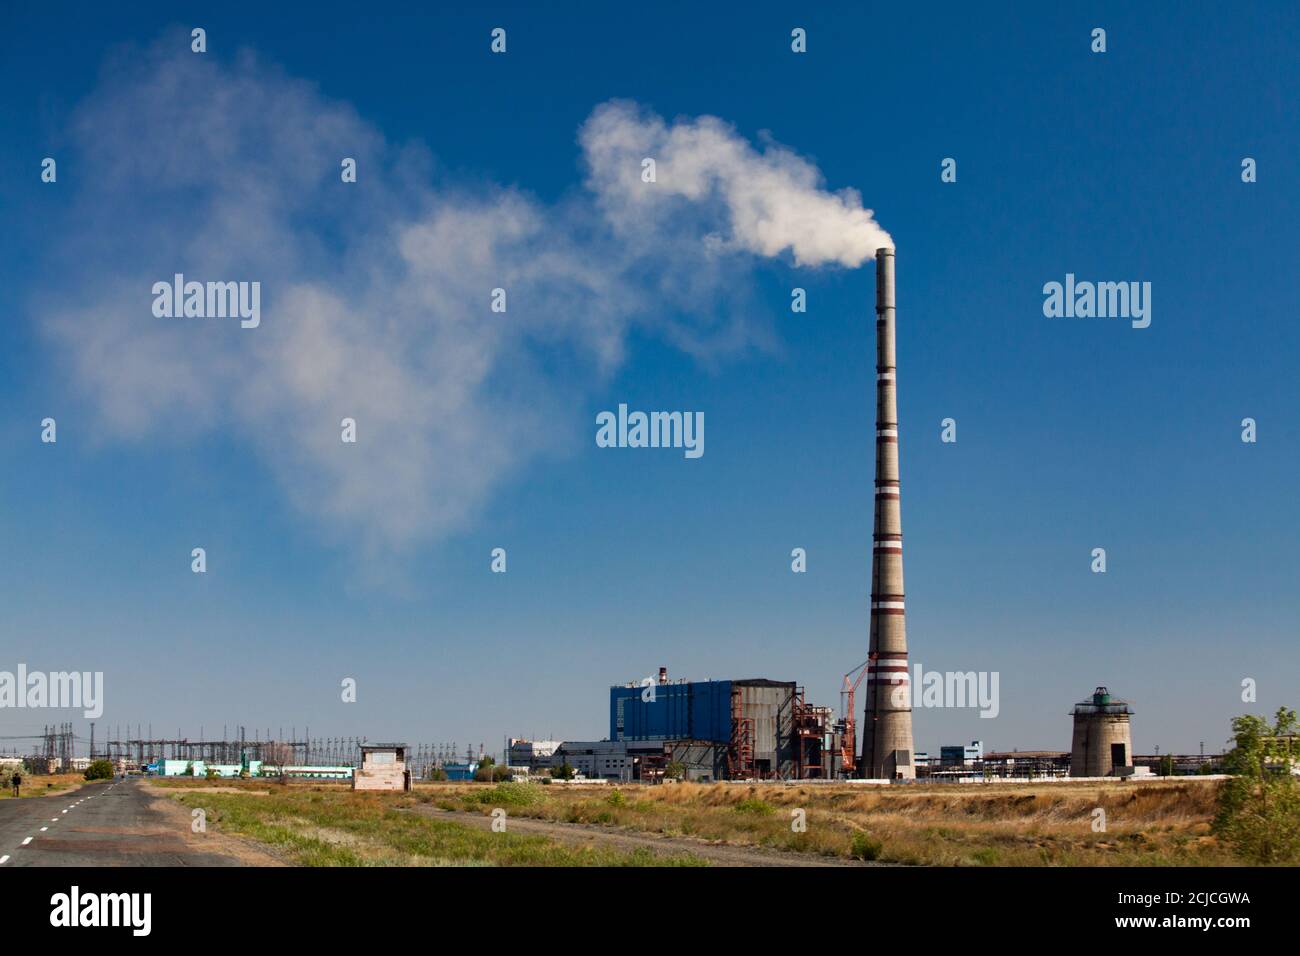 Vue panoramique de la centrale électrique d'Ekibastuz, Kazakhstan. Vapeur blanche de cheminée de plante sur ciel bleu. Banque D'Images